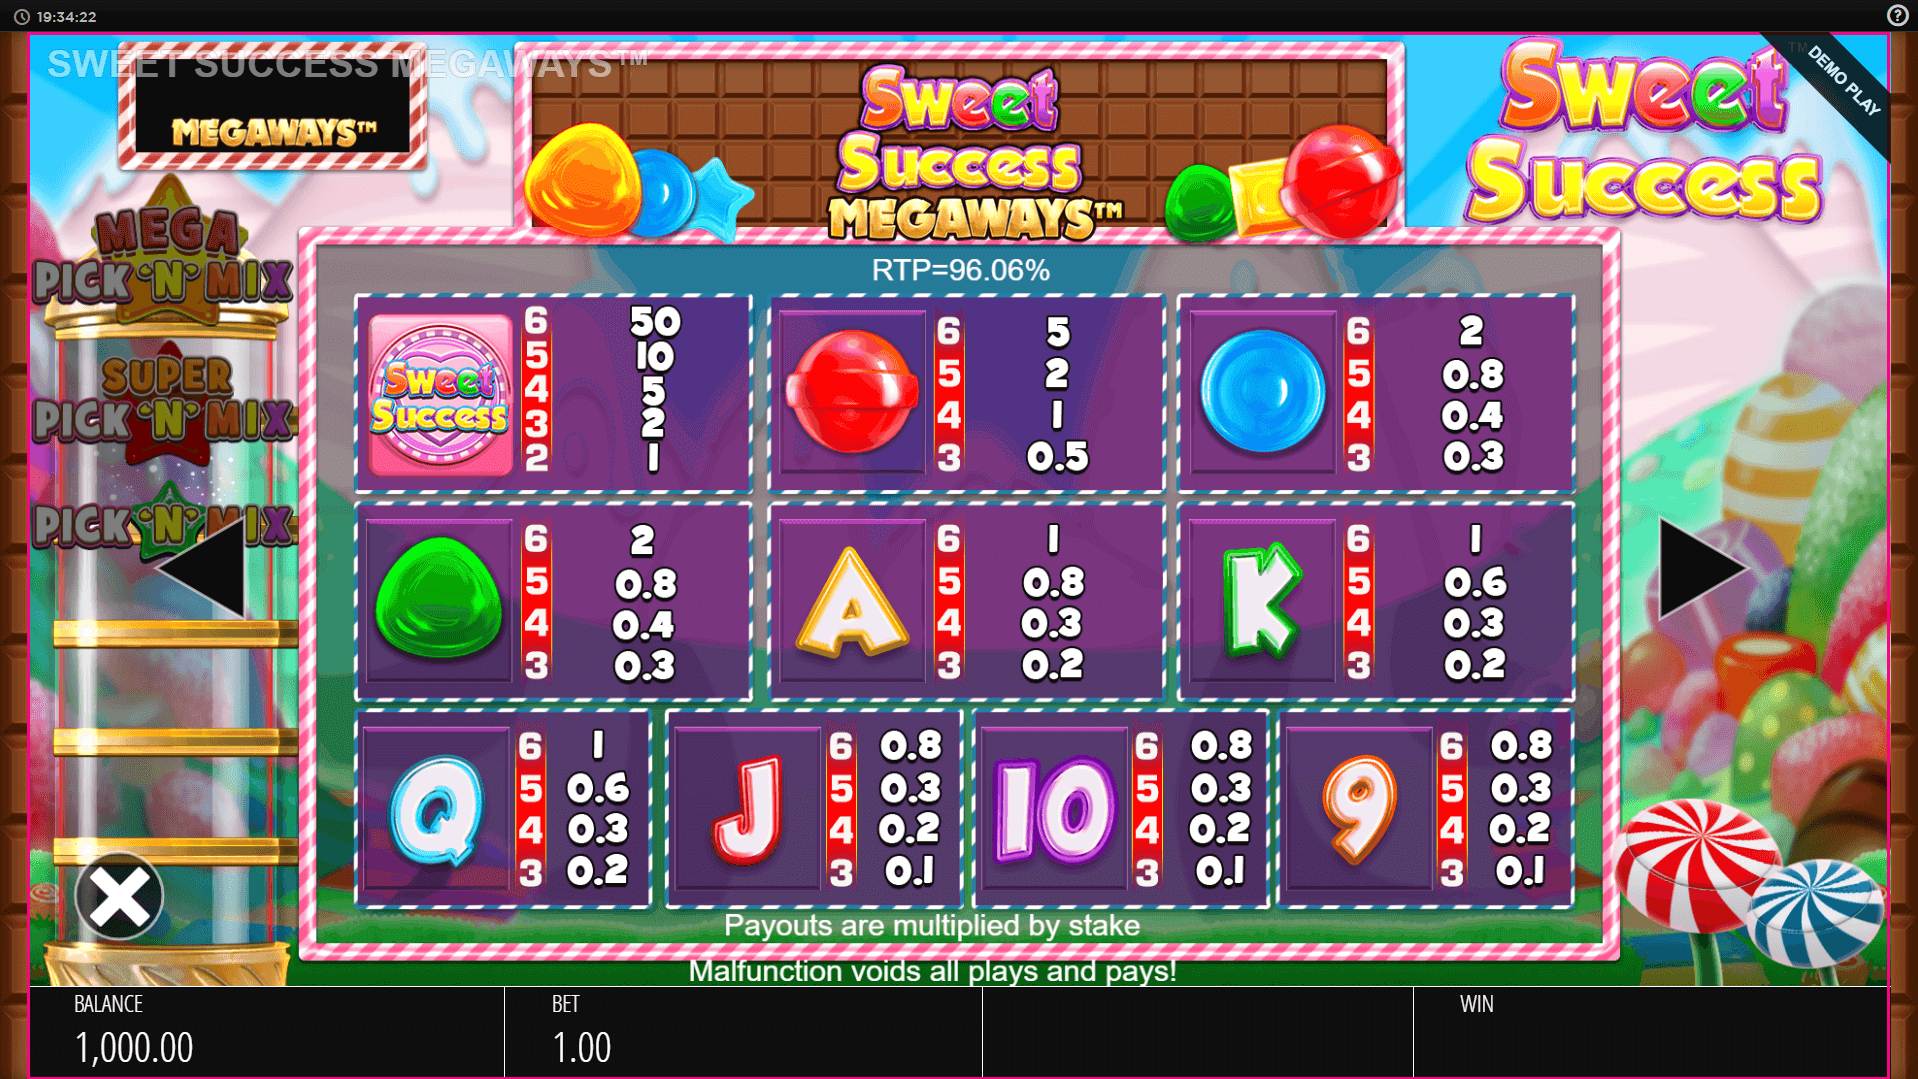 sweet success megaways slot machine detail image 0